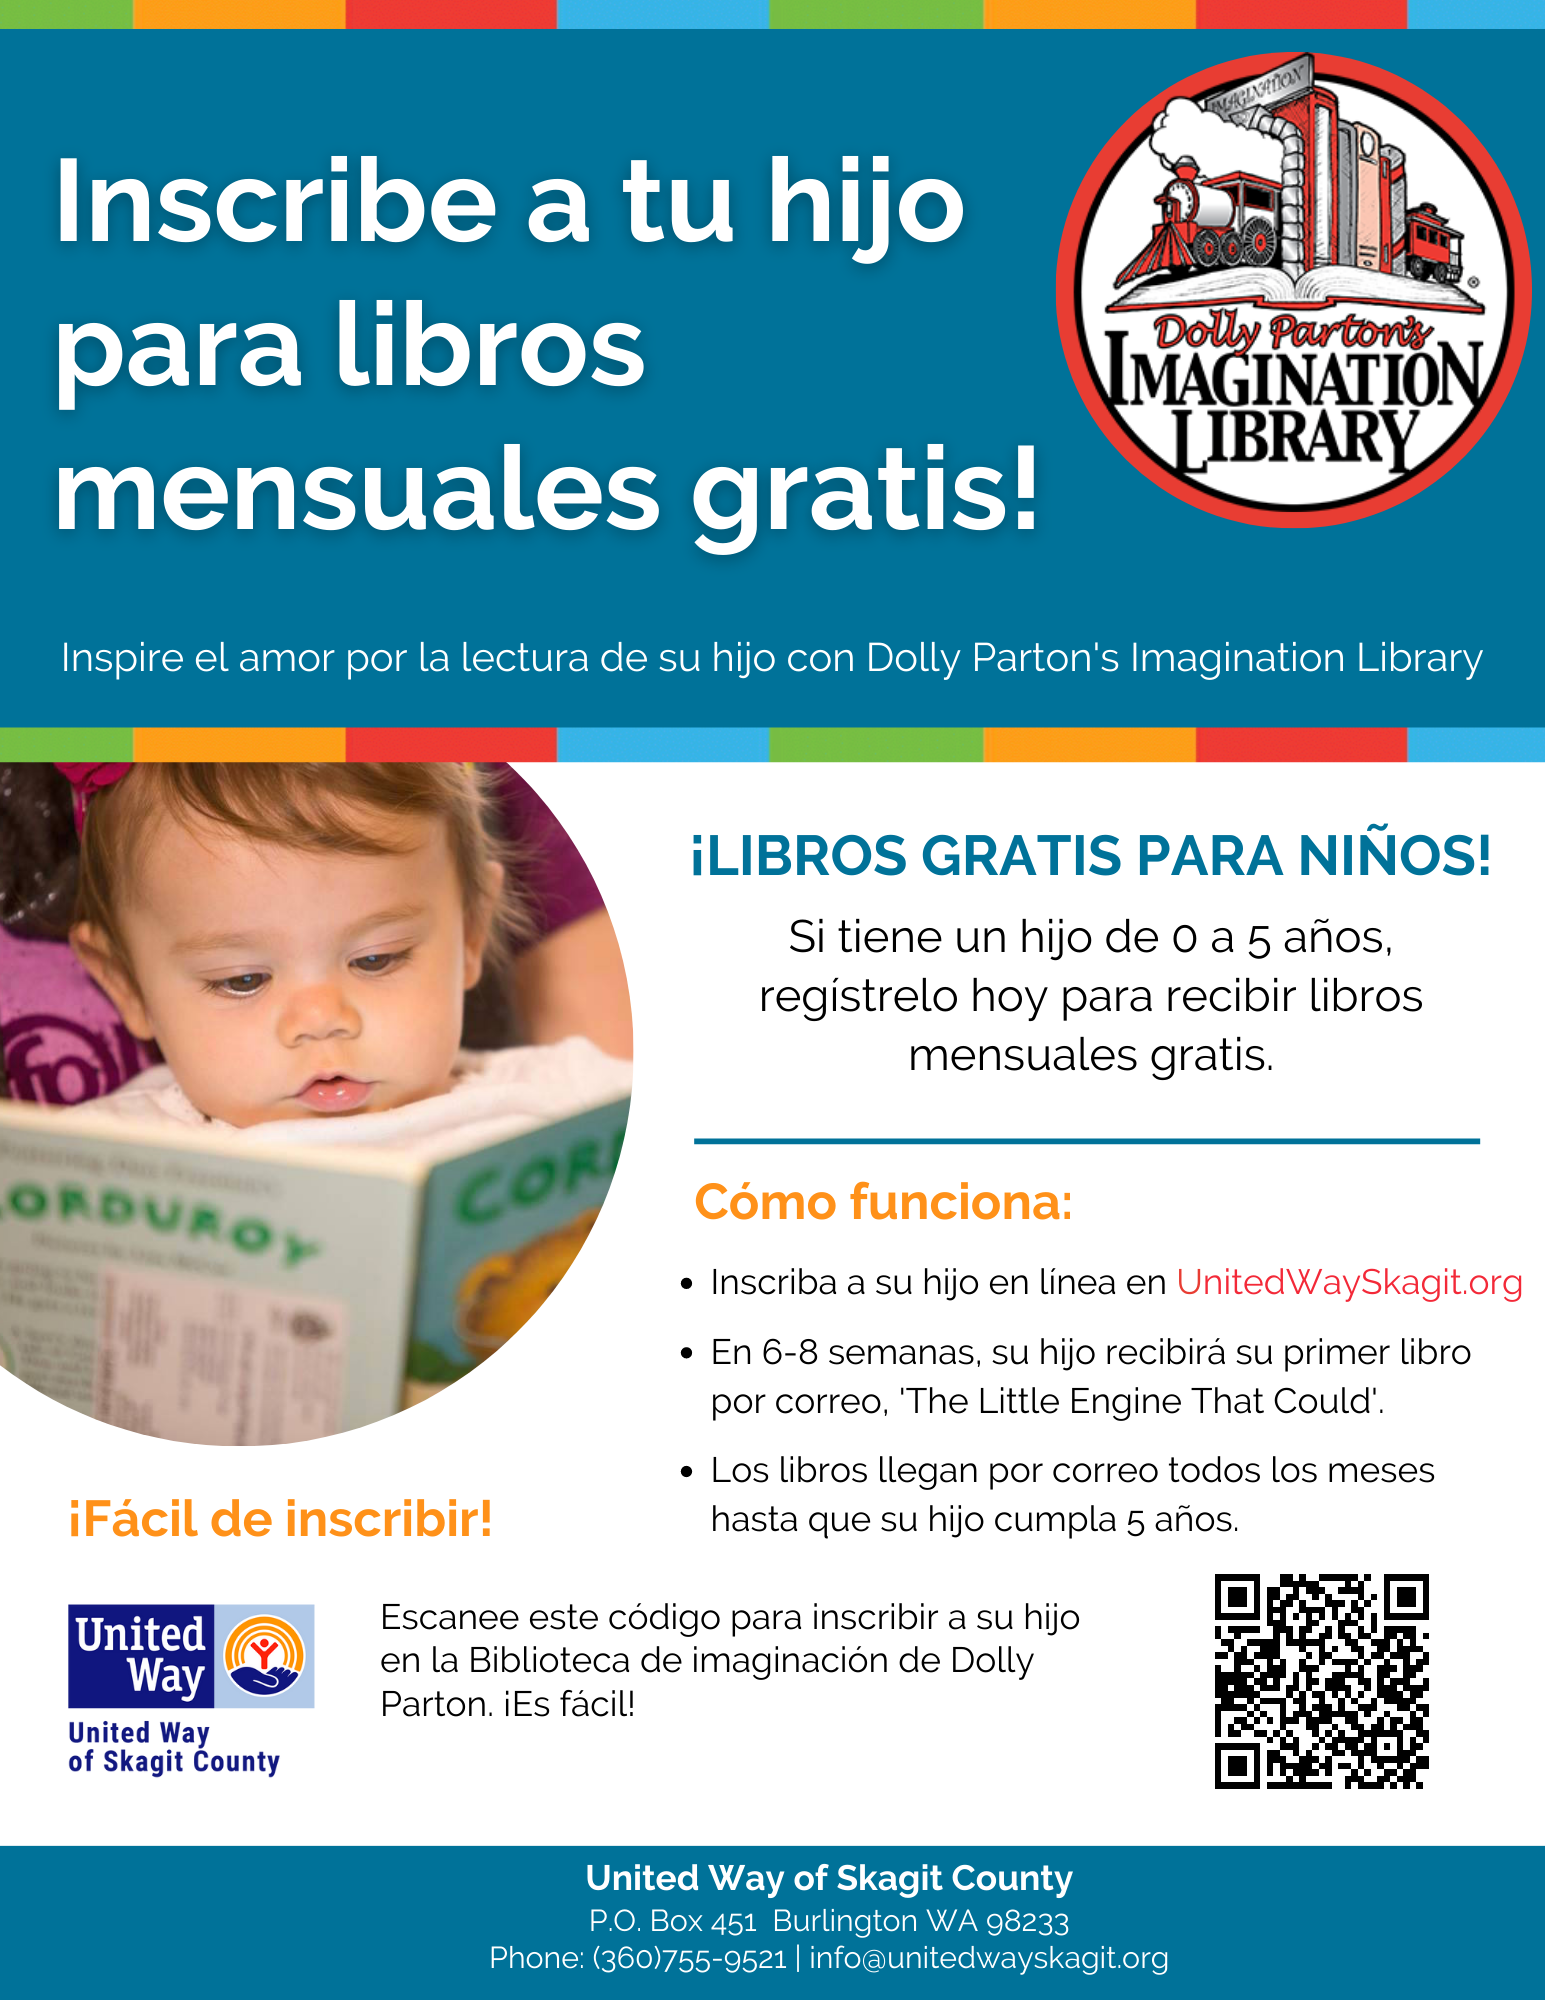 ¡LIBROS GRATIS PARA NINOS! Si tiene un hijo de o a 5 años, regístrelo hoy para recibir libros mensuales gratis.